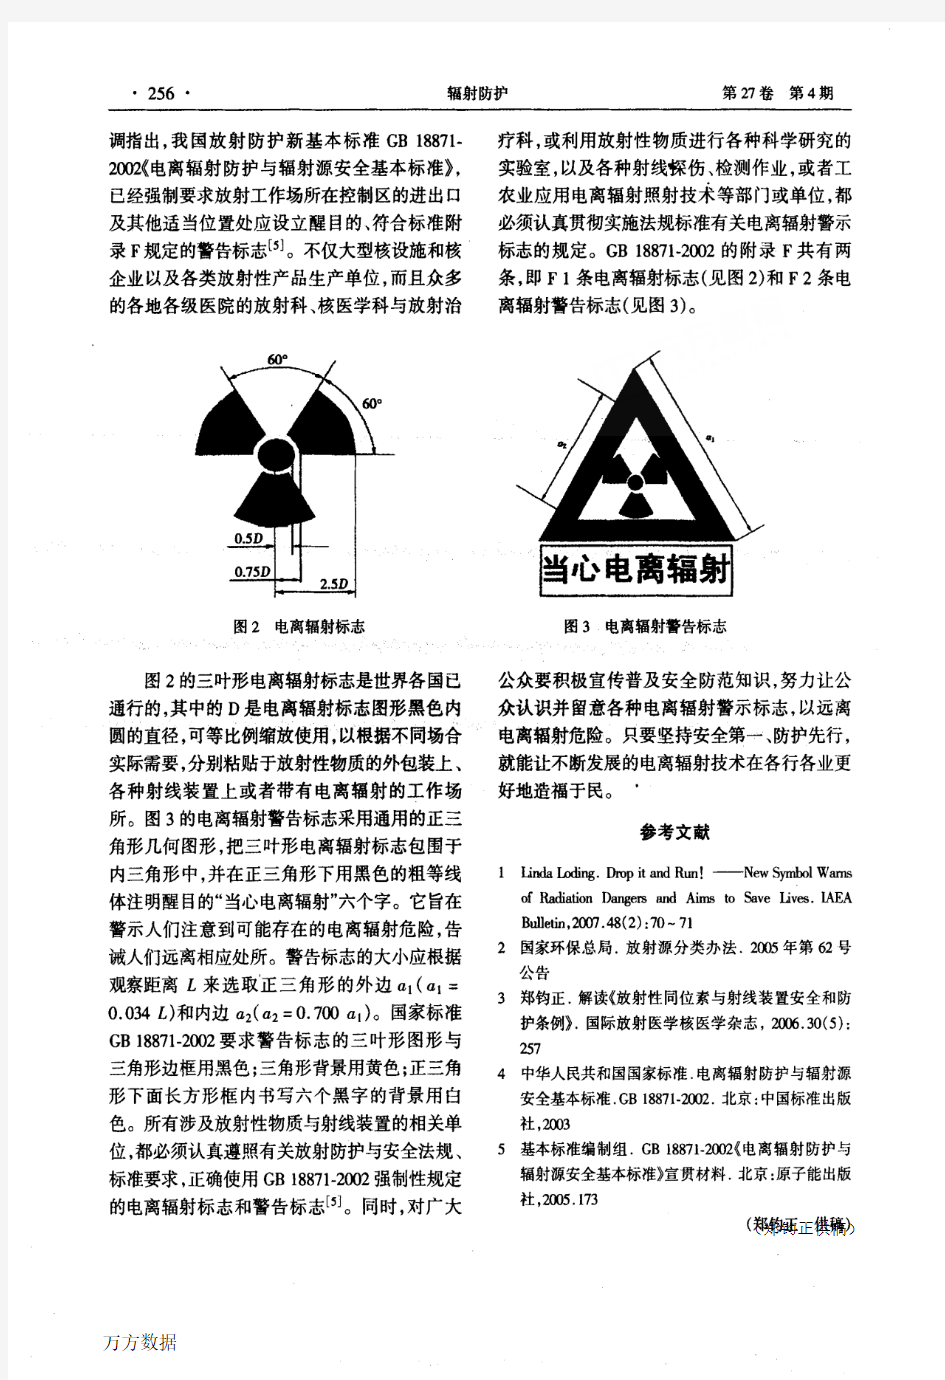 关于电离辐射防护与安全的警示标志